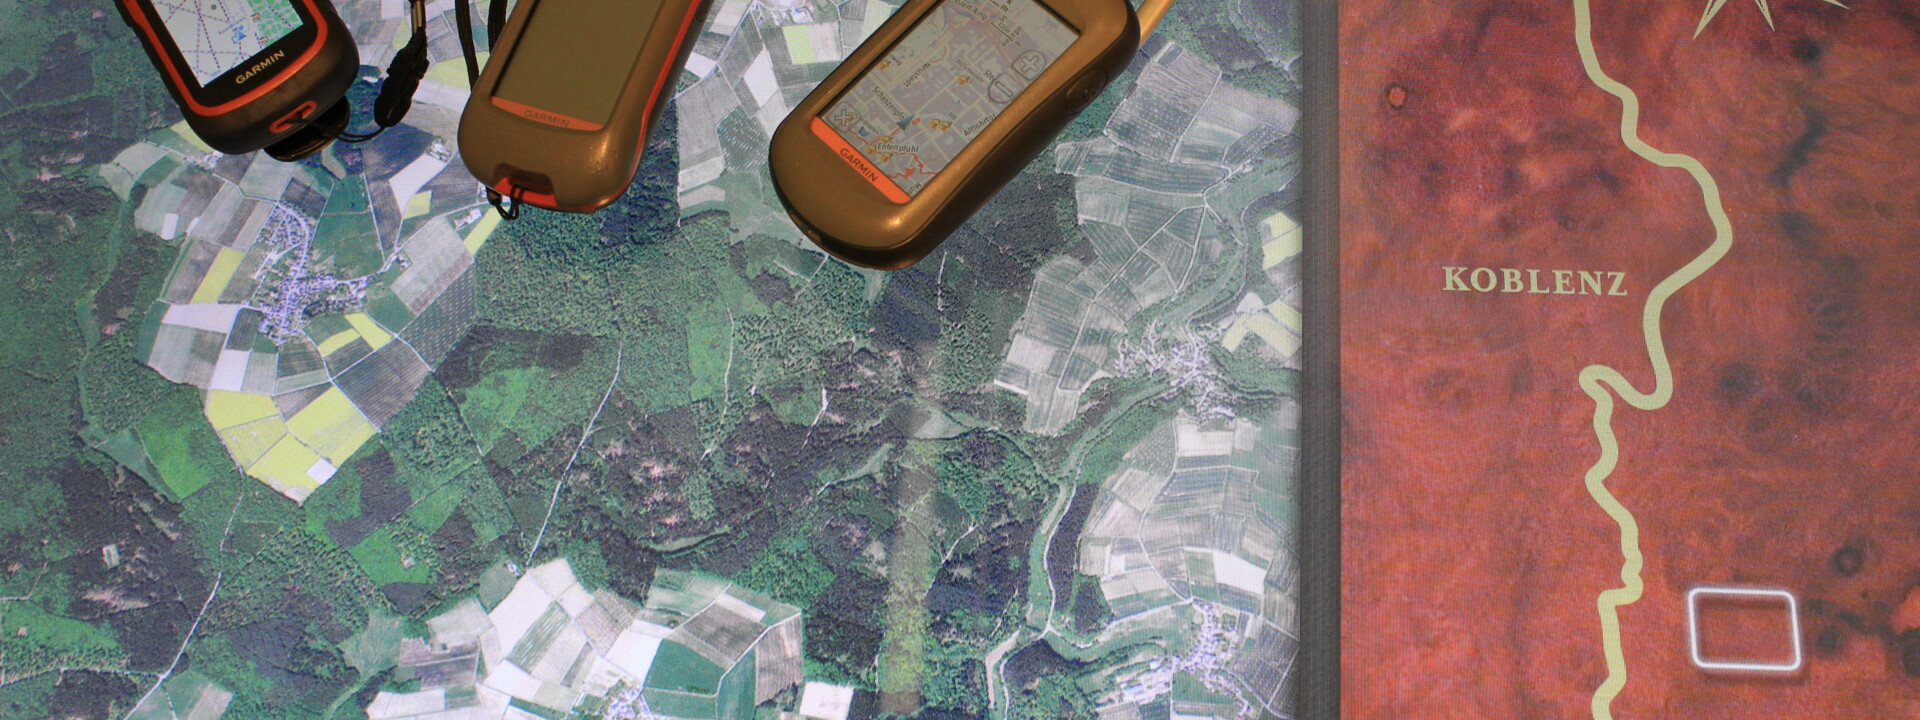 GPS-Geräte liegen auf einem Luftbild ©Koblenz-Touristik GmbH